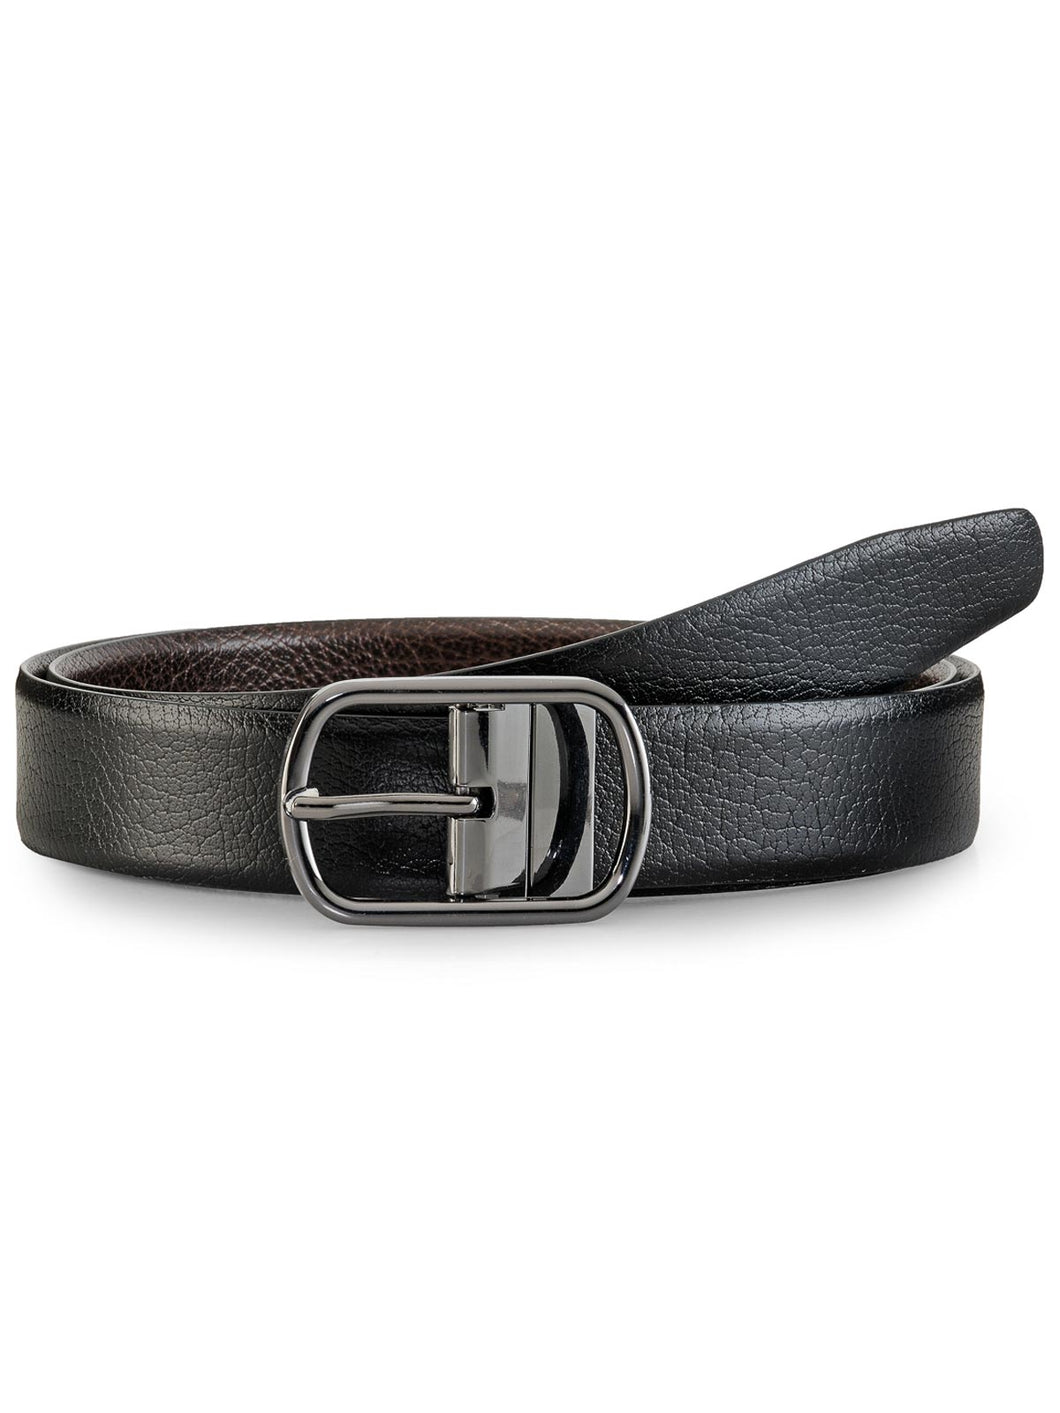 Teakwood Leathers Men Black & Brown Reversible Genuine Leather Belt